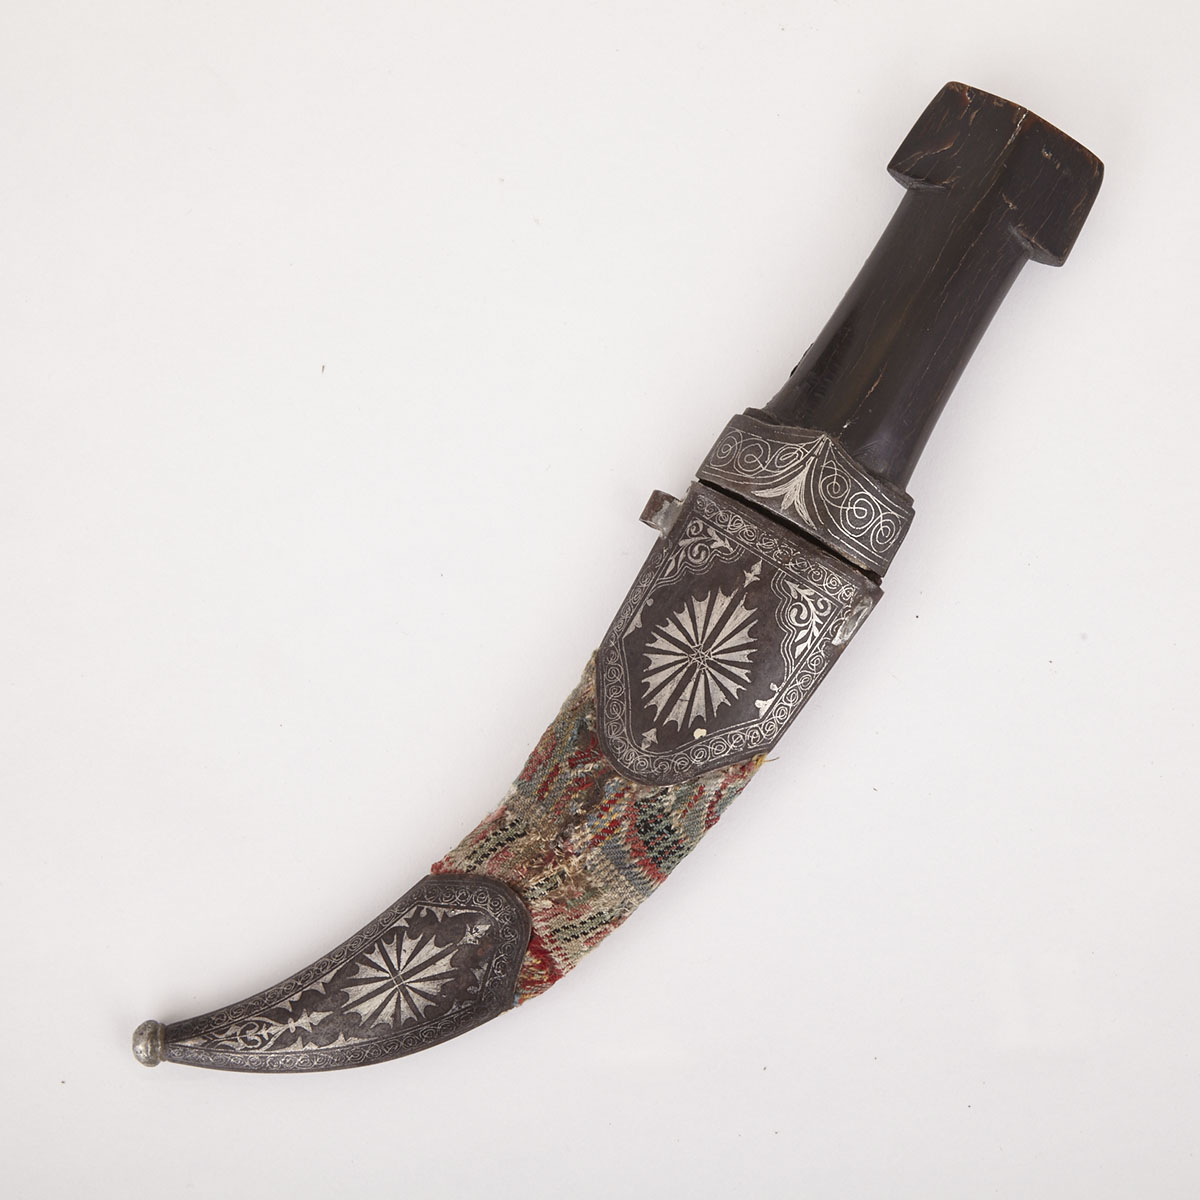 Turkish Ottoman Dagger (Jambiya), 19th century